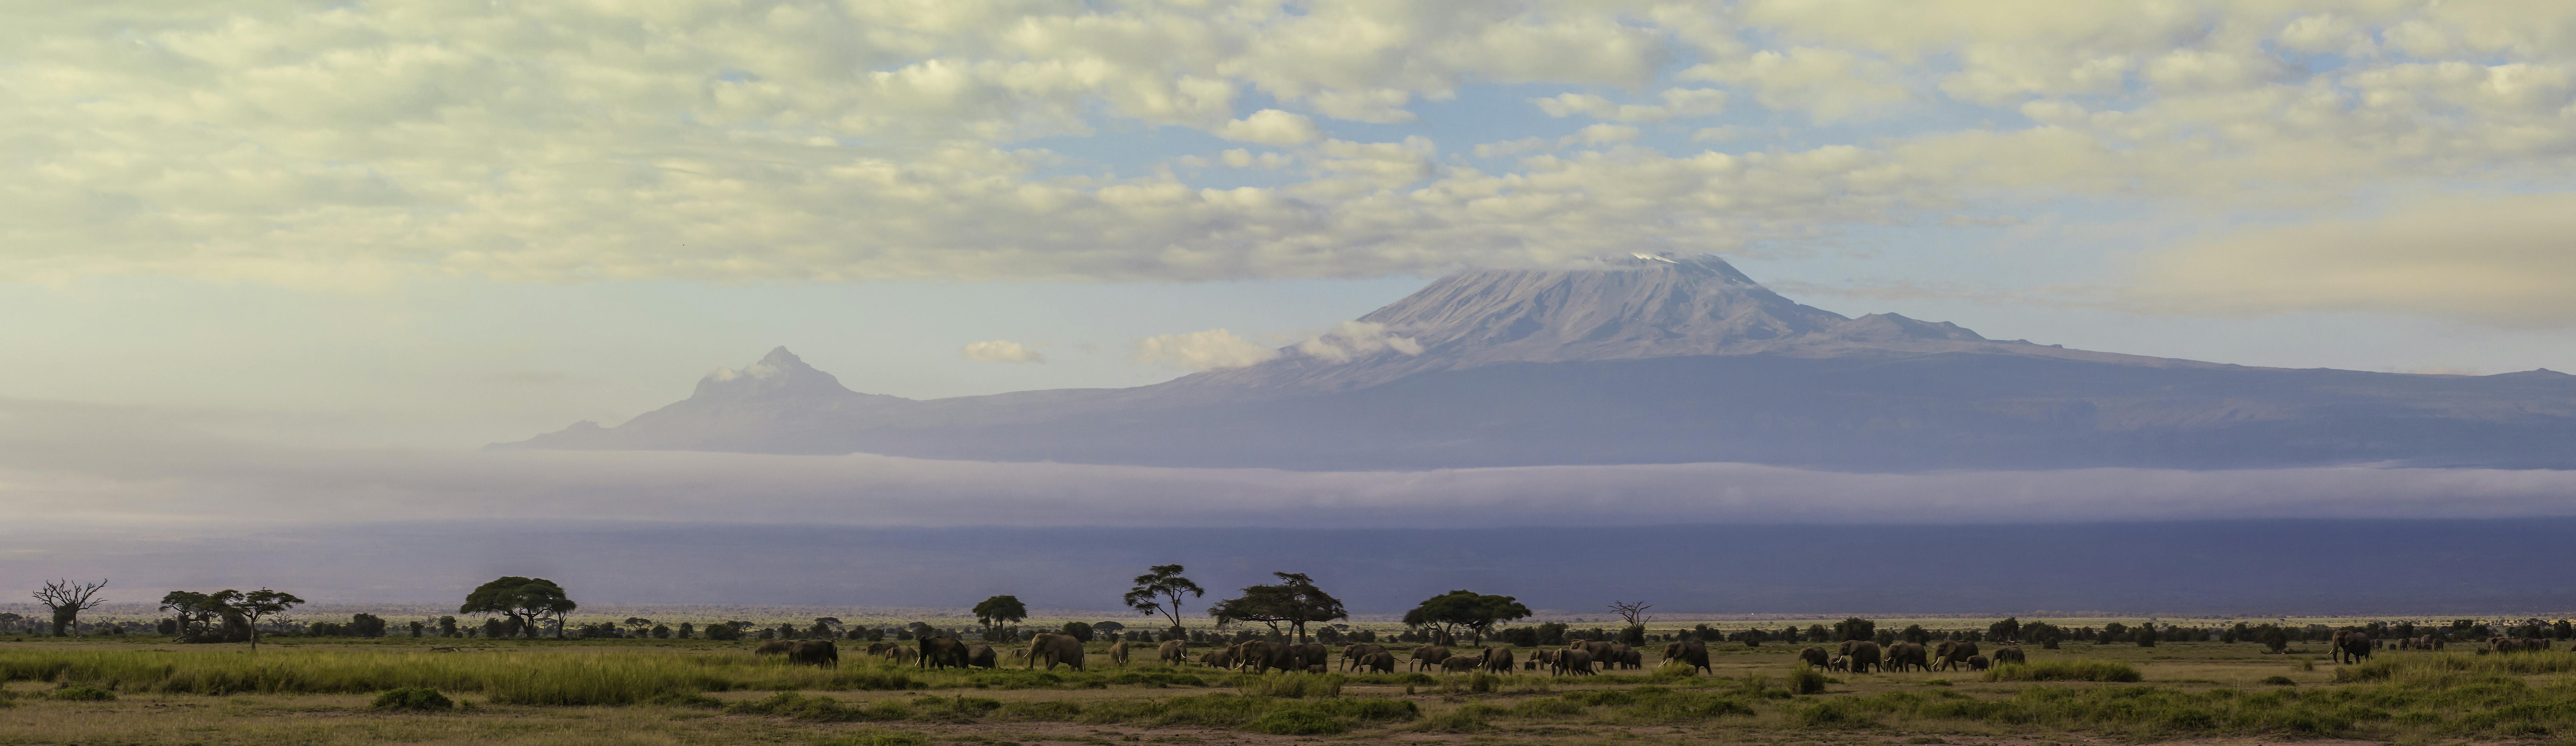 Caminata de un día por el monte Kilimanjaro desde Arusha